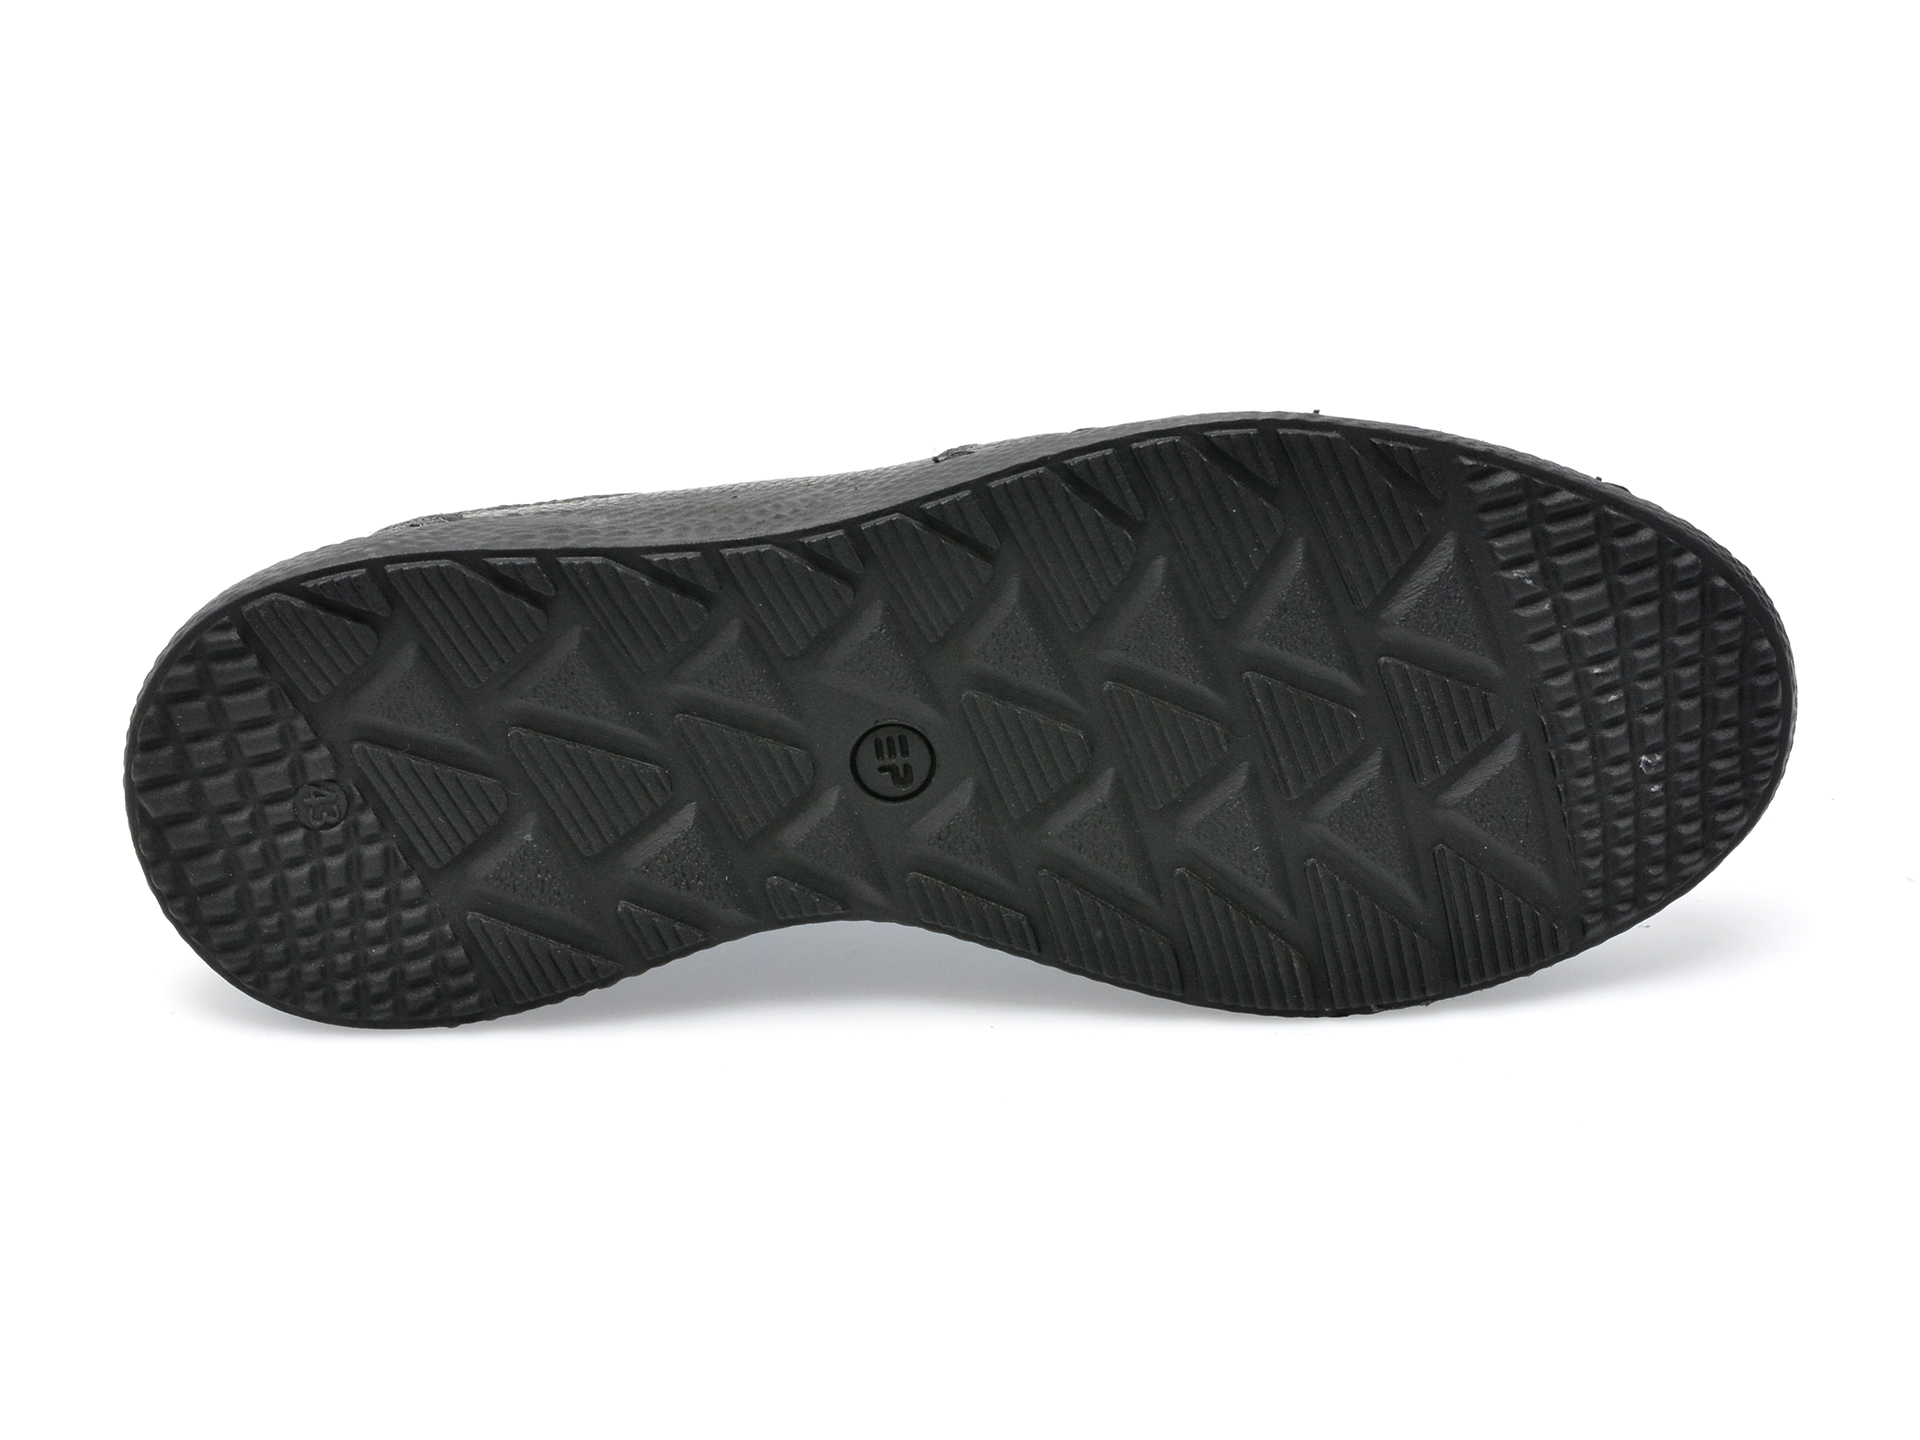 Poze Pantofi OTTER negri, 8561, din piele naturala Tezyo